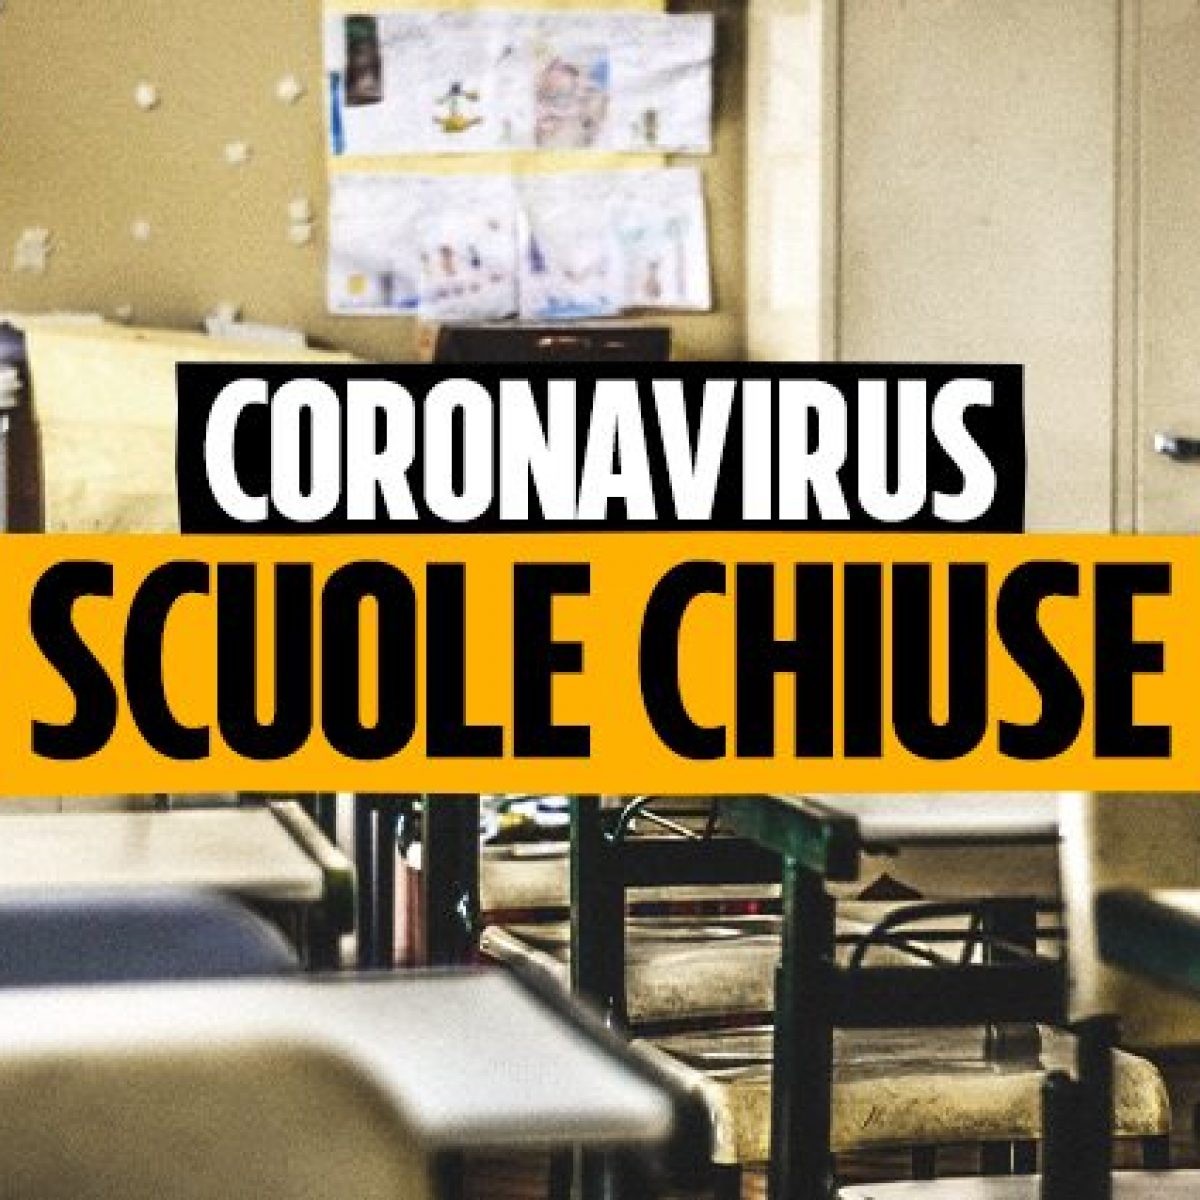 coronavirus-scuole-chiuse-articolo-1200x1200